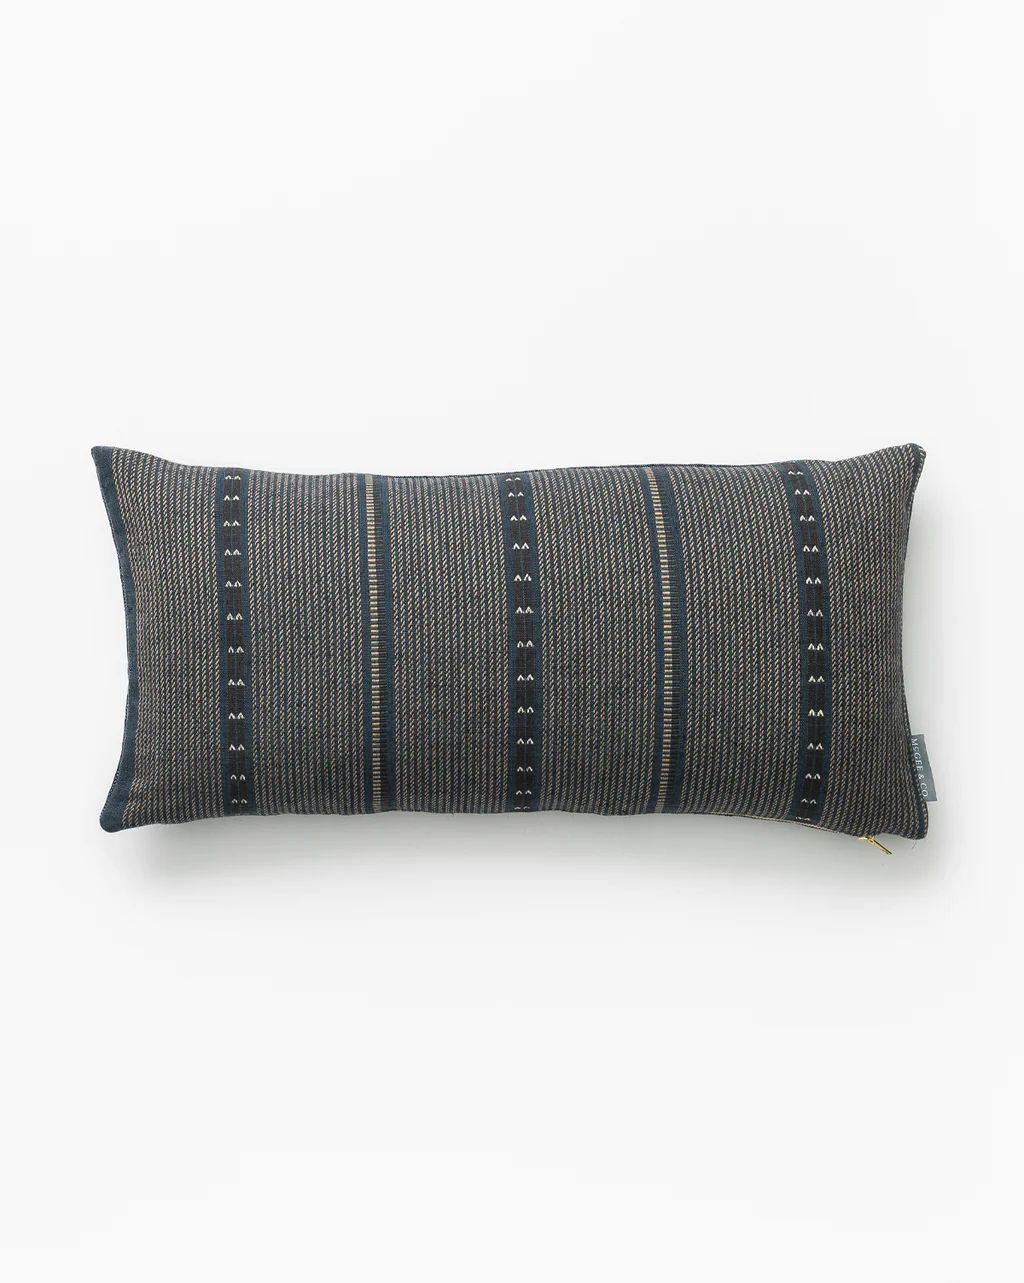 Dorian Pillow Cover | McGee & Co.